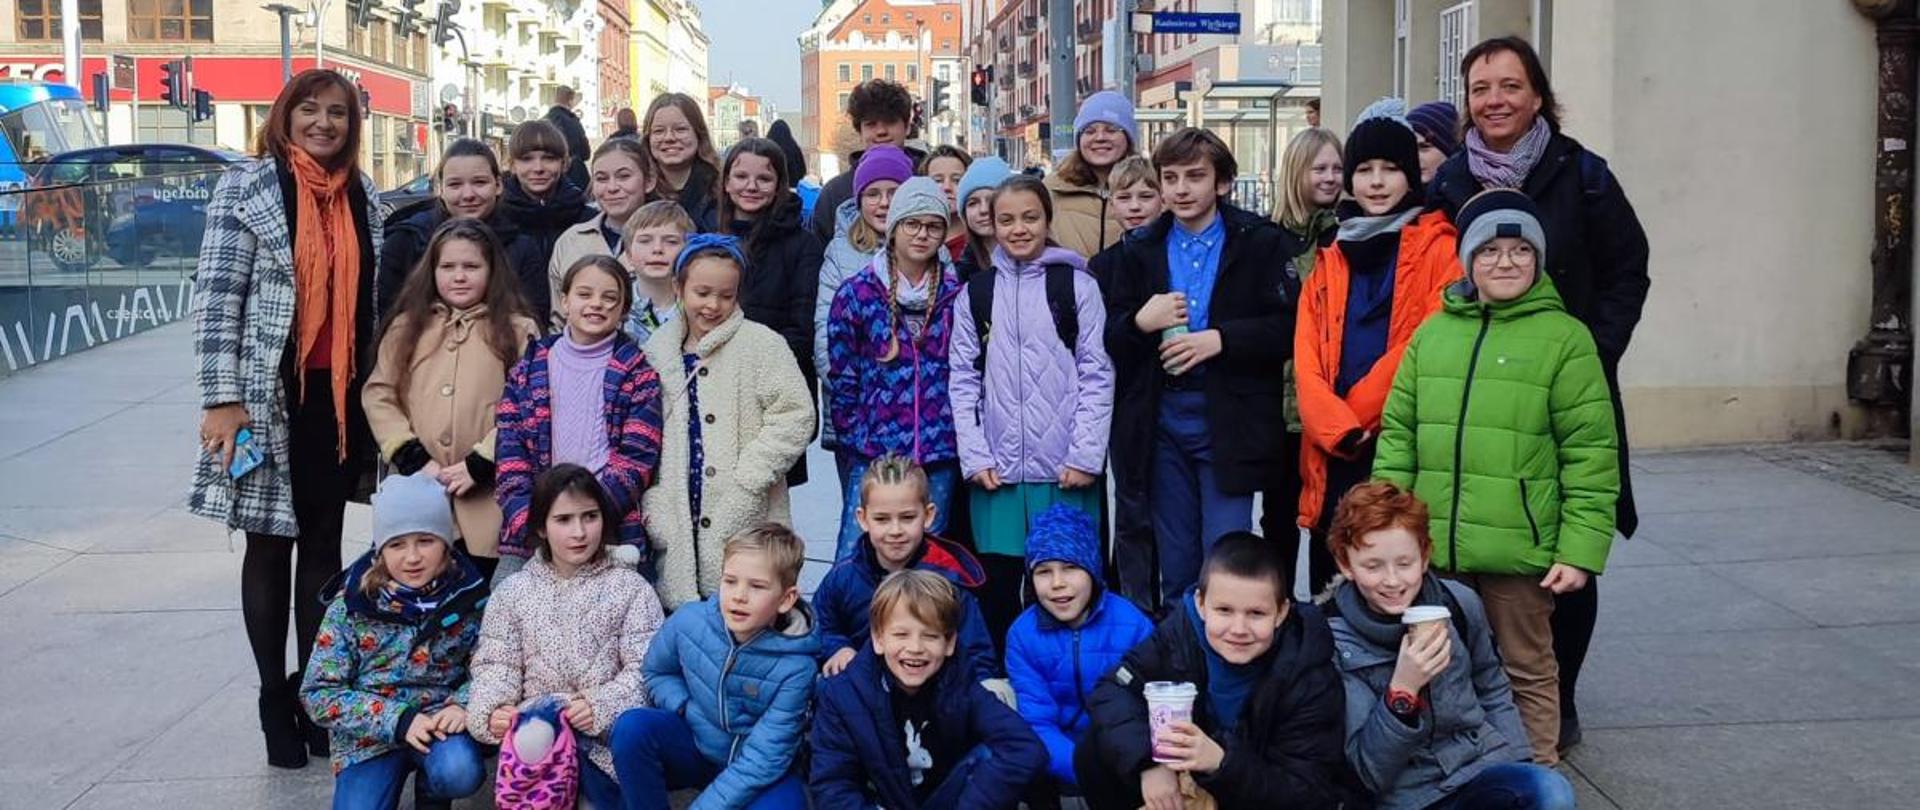 Grupowe zdjęcie wszystkich uczniów biorących udział w wyjeździe uczniów na koncert pt. "Baśń orientalna" we Wrocławiu na tle ulicy oraz budynków w tle 